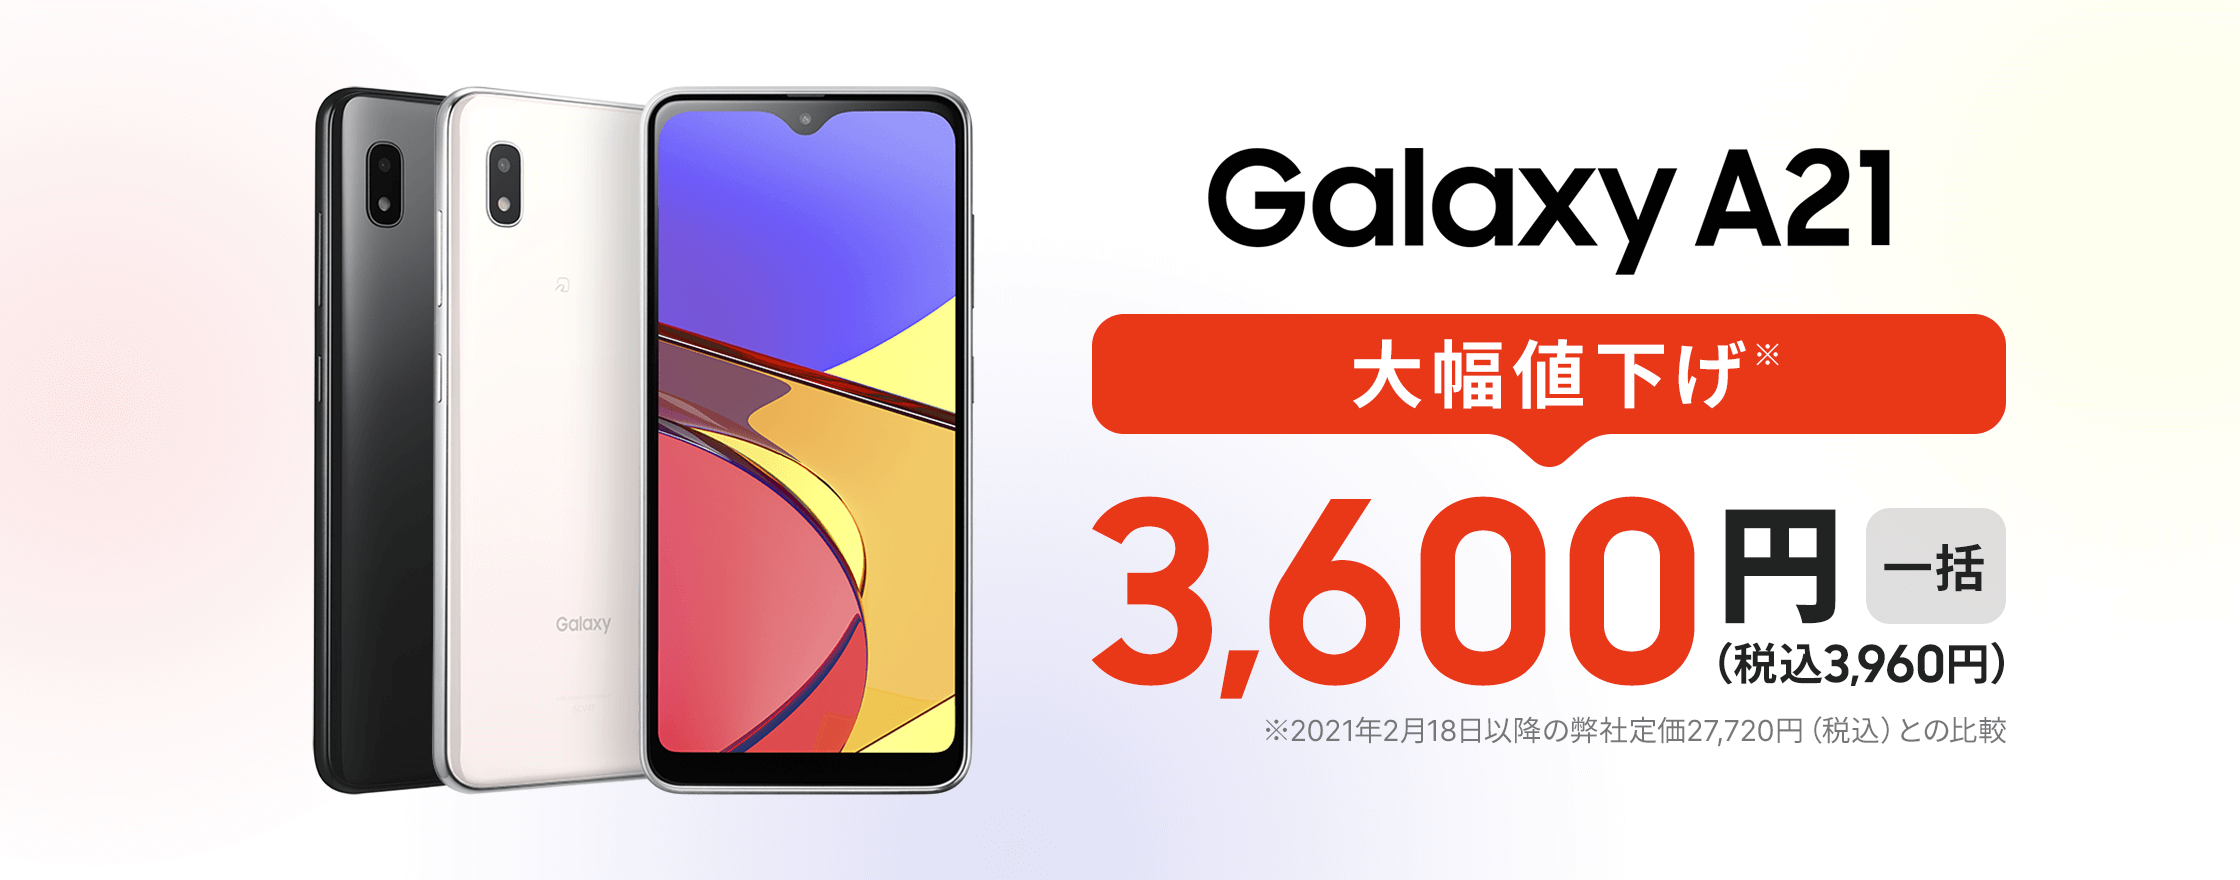 Galaxy A21 大幅値下げ 税込3960円